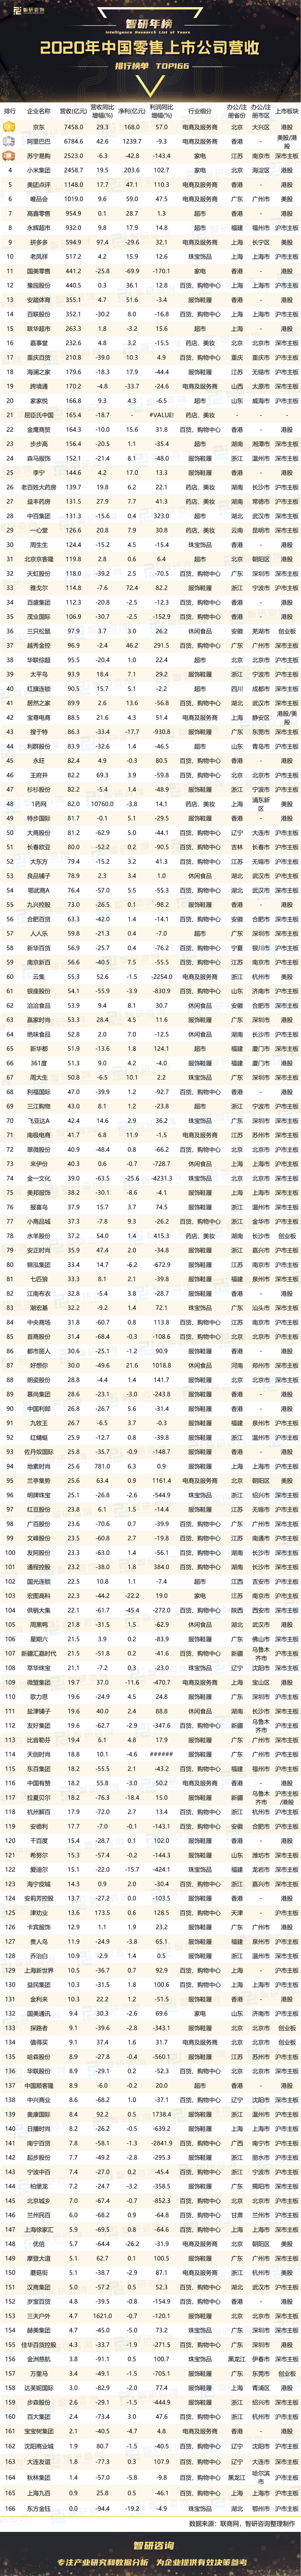 中国苏宁排行_2020年中国零售上市公司营收排行榜:阿里巴巴净利润最高,苏宁易购...